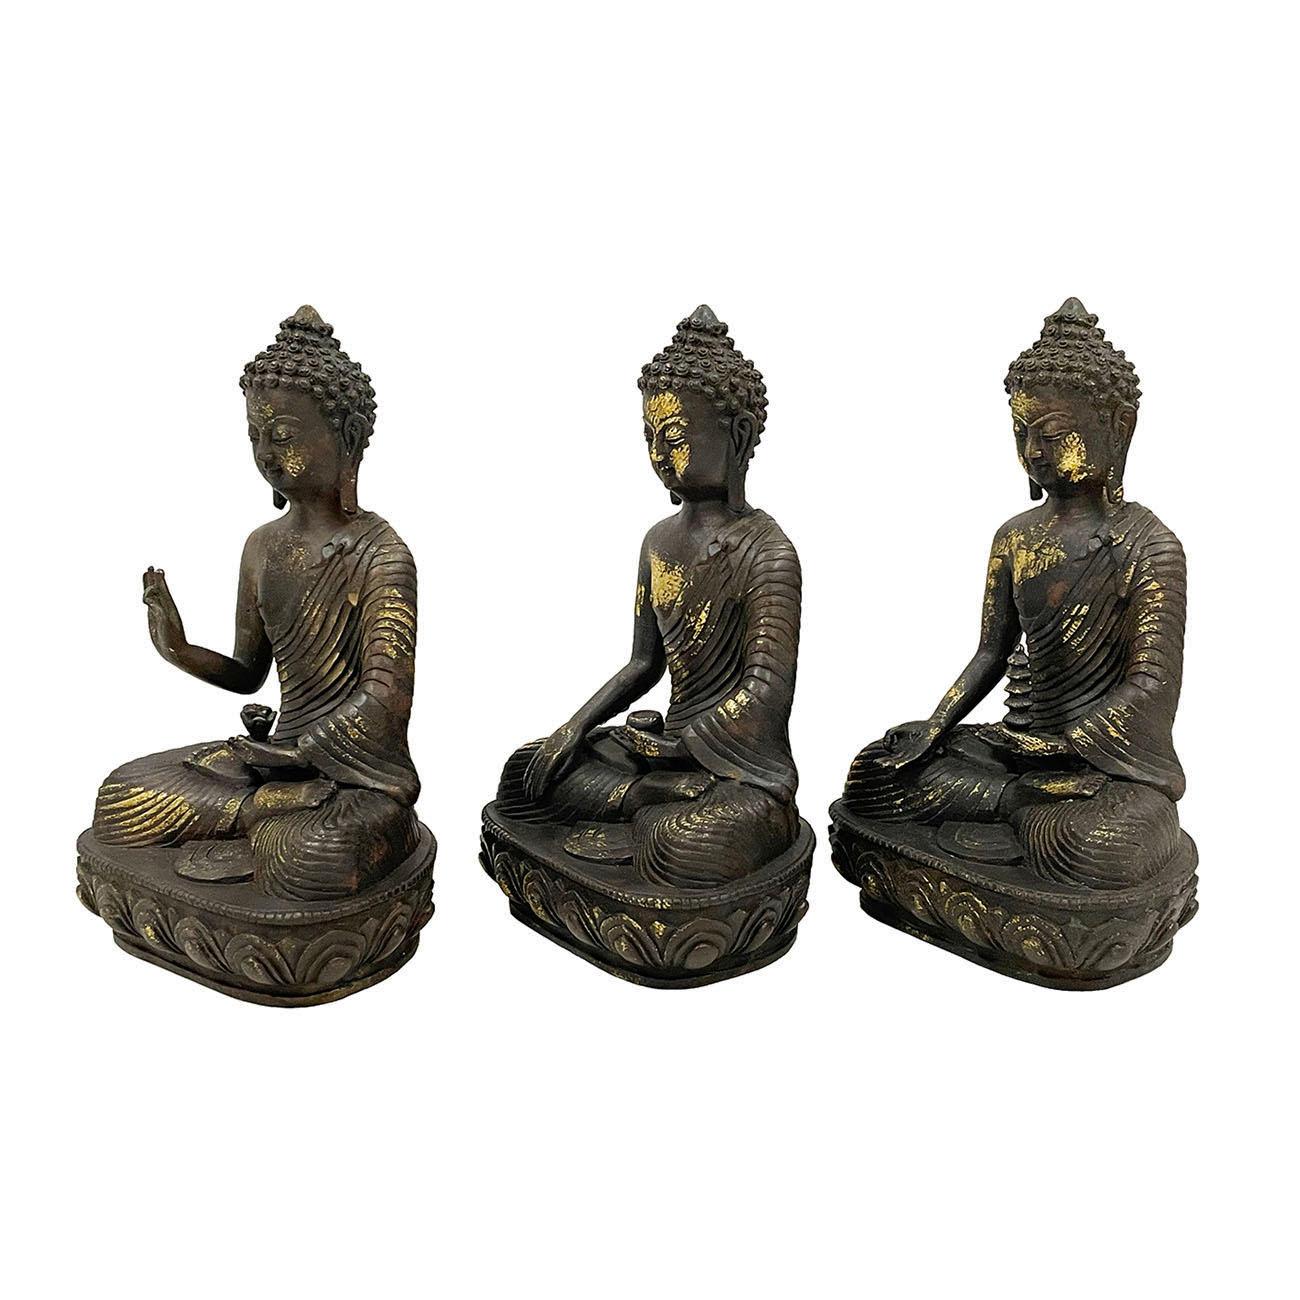 Les trois générations de Bouddha représentent les trois générations de Bouddha passées, présentes et futures. Il s'agit du Bouddha Dipamkara, du Bouddha Sakyamuni et du Bouddha Maitreya. Elles ont été fabriquées à la main en bronze et montrent les